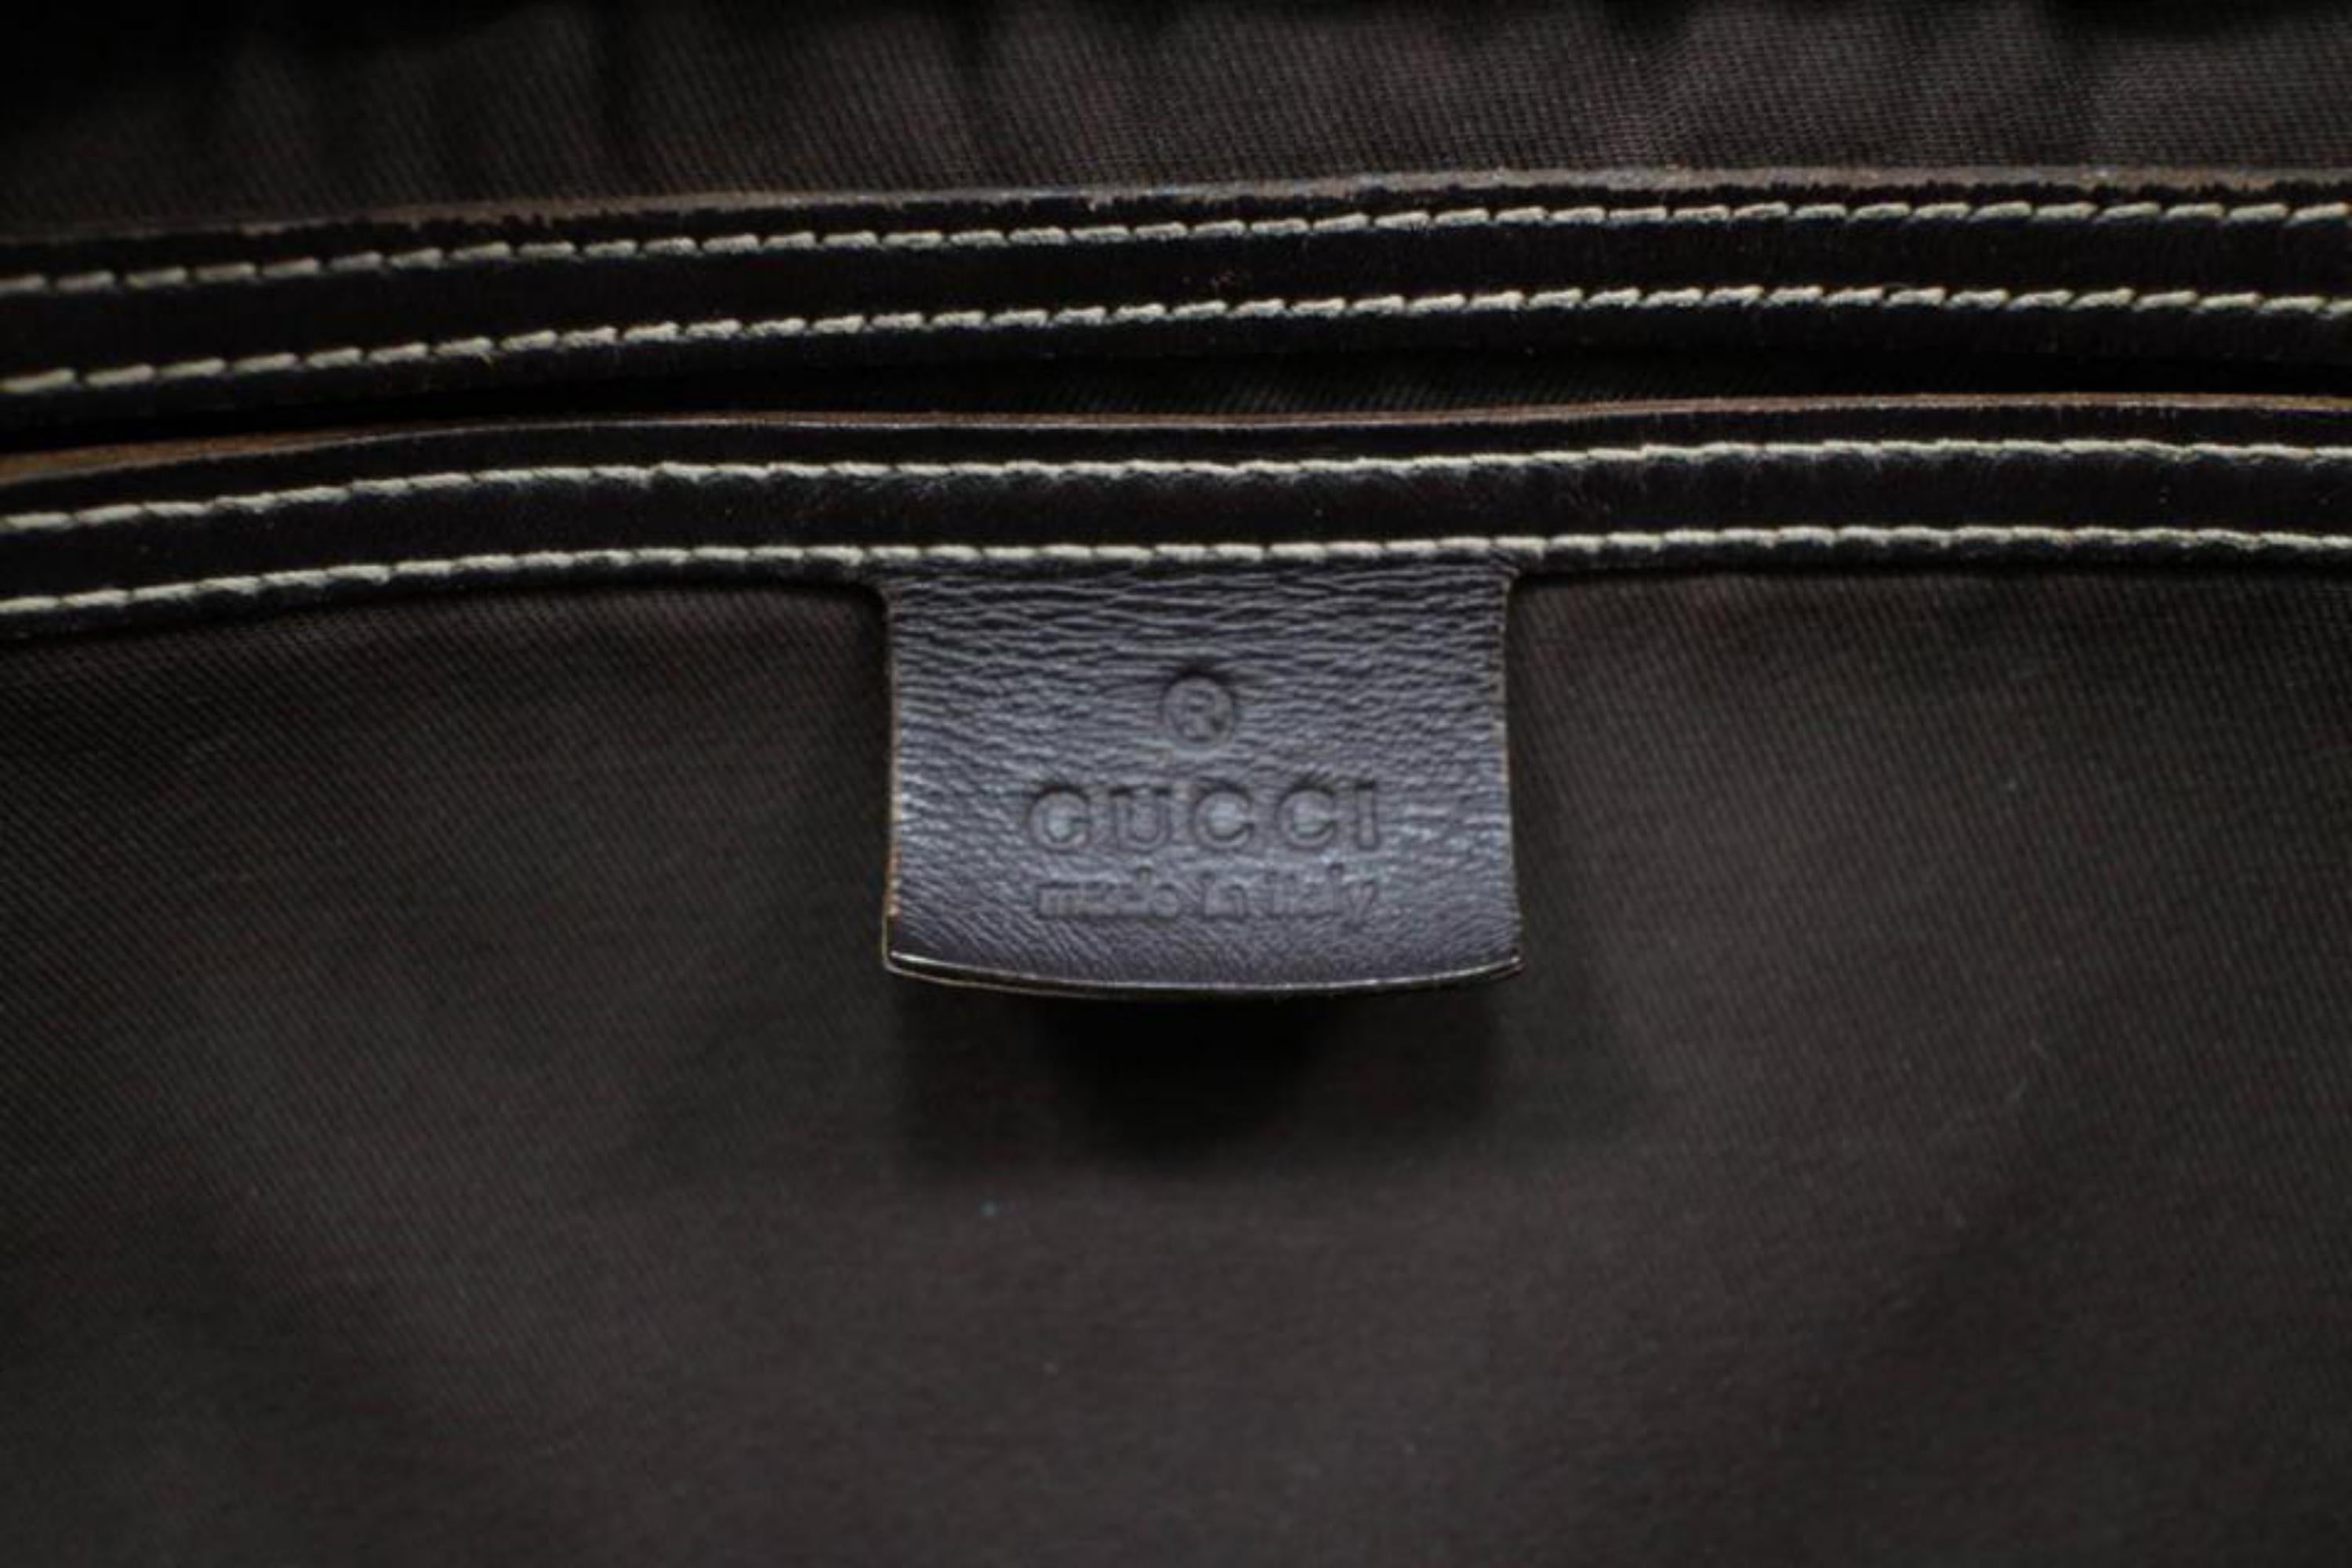 gucci bag serial number 201448 204990